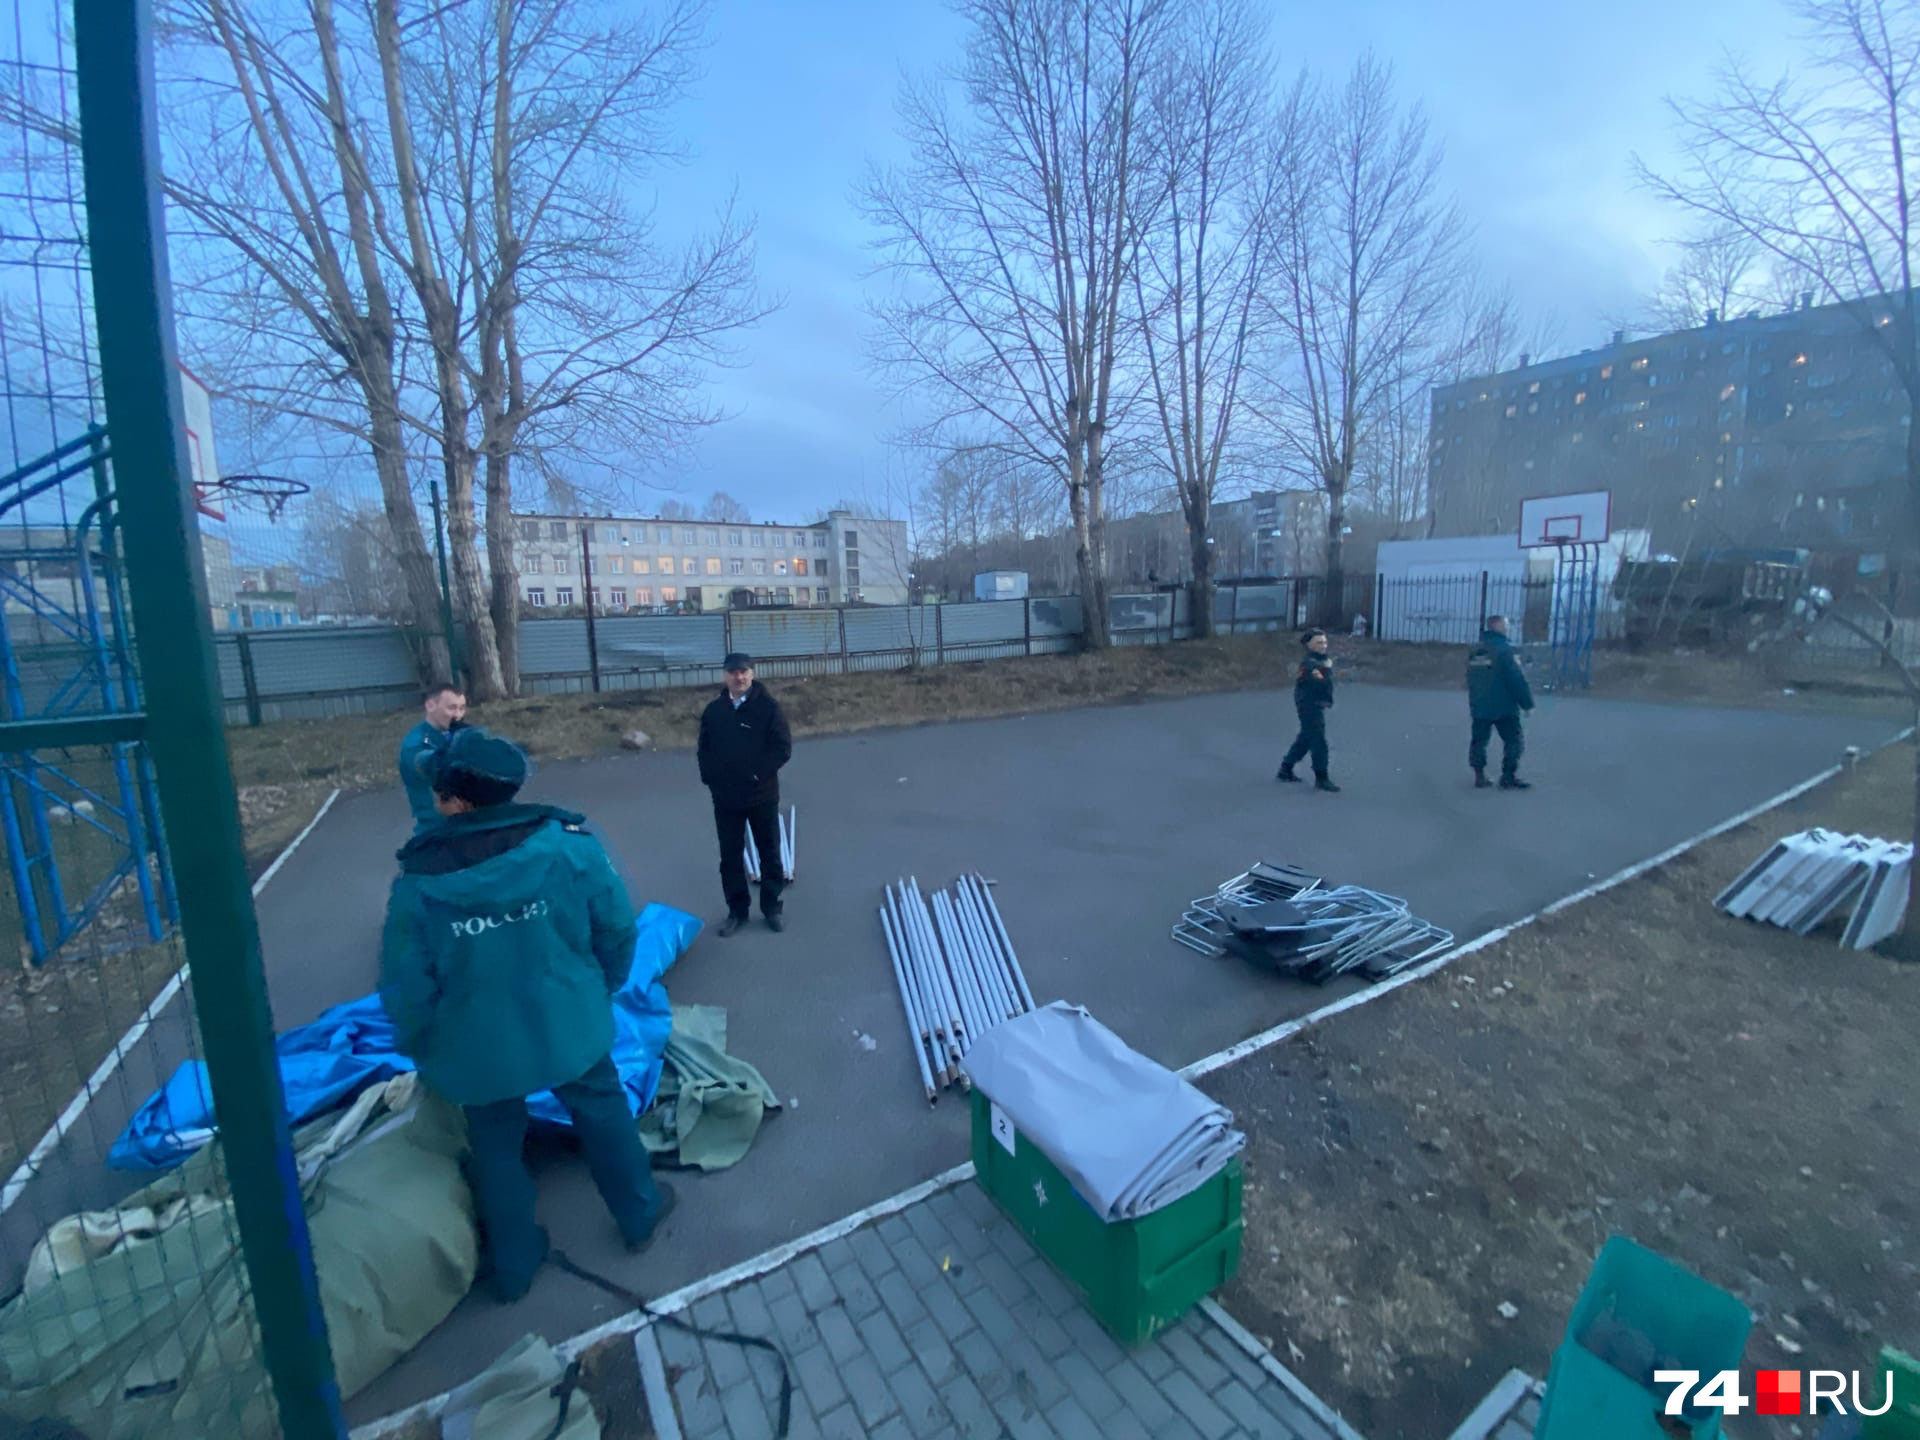 МЧС разбивает штаб на баскетбольной площадке вблизи дома на <nobr class="_">Куйбышева, 7</nobr>